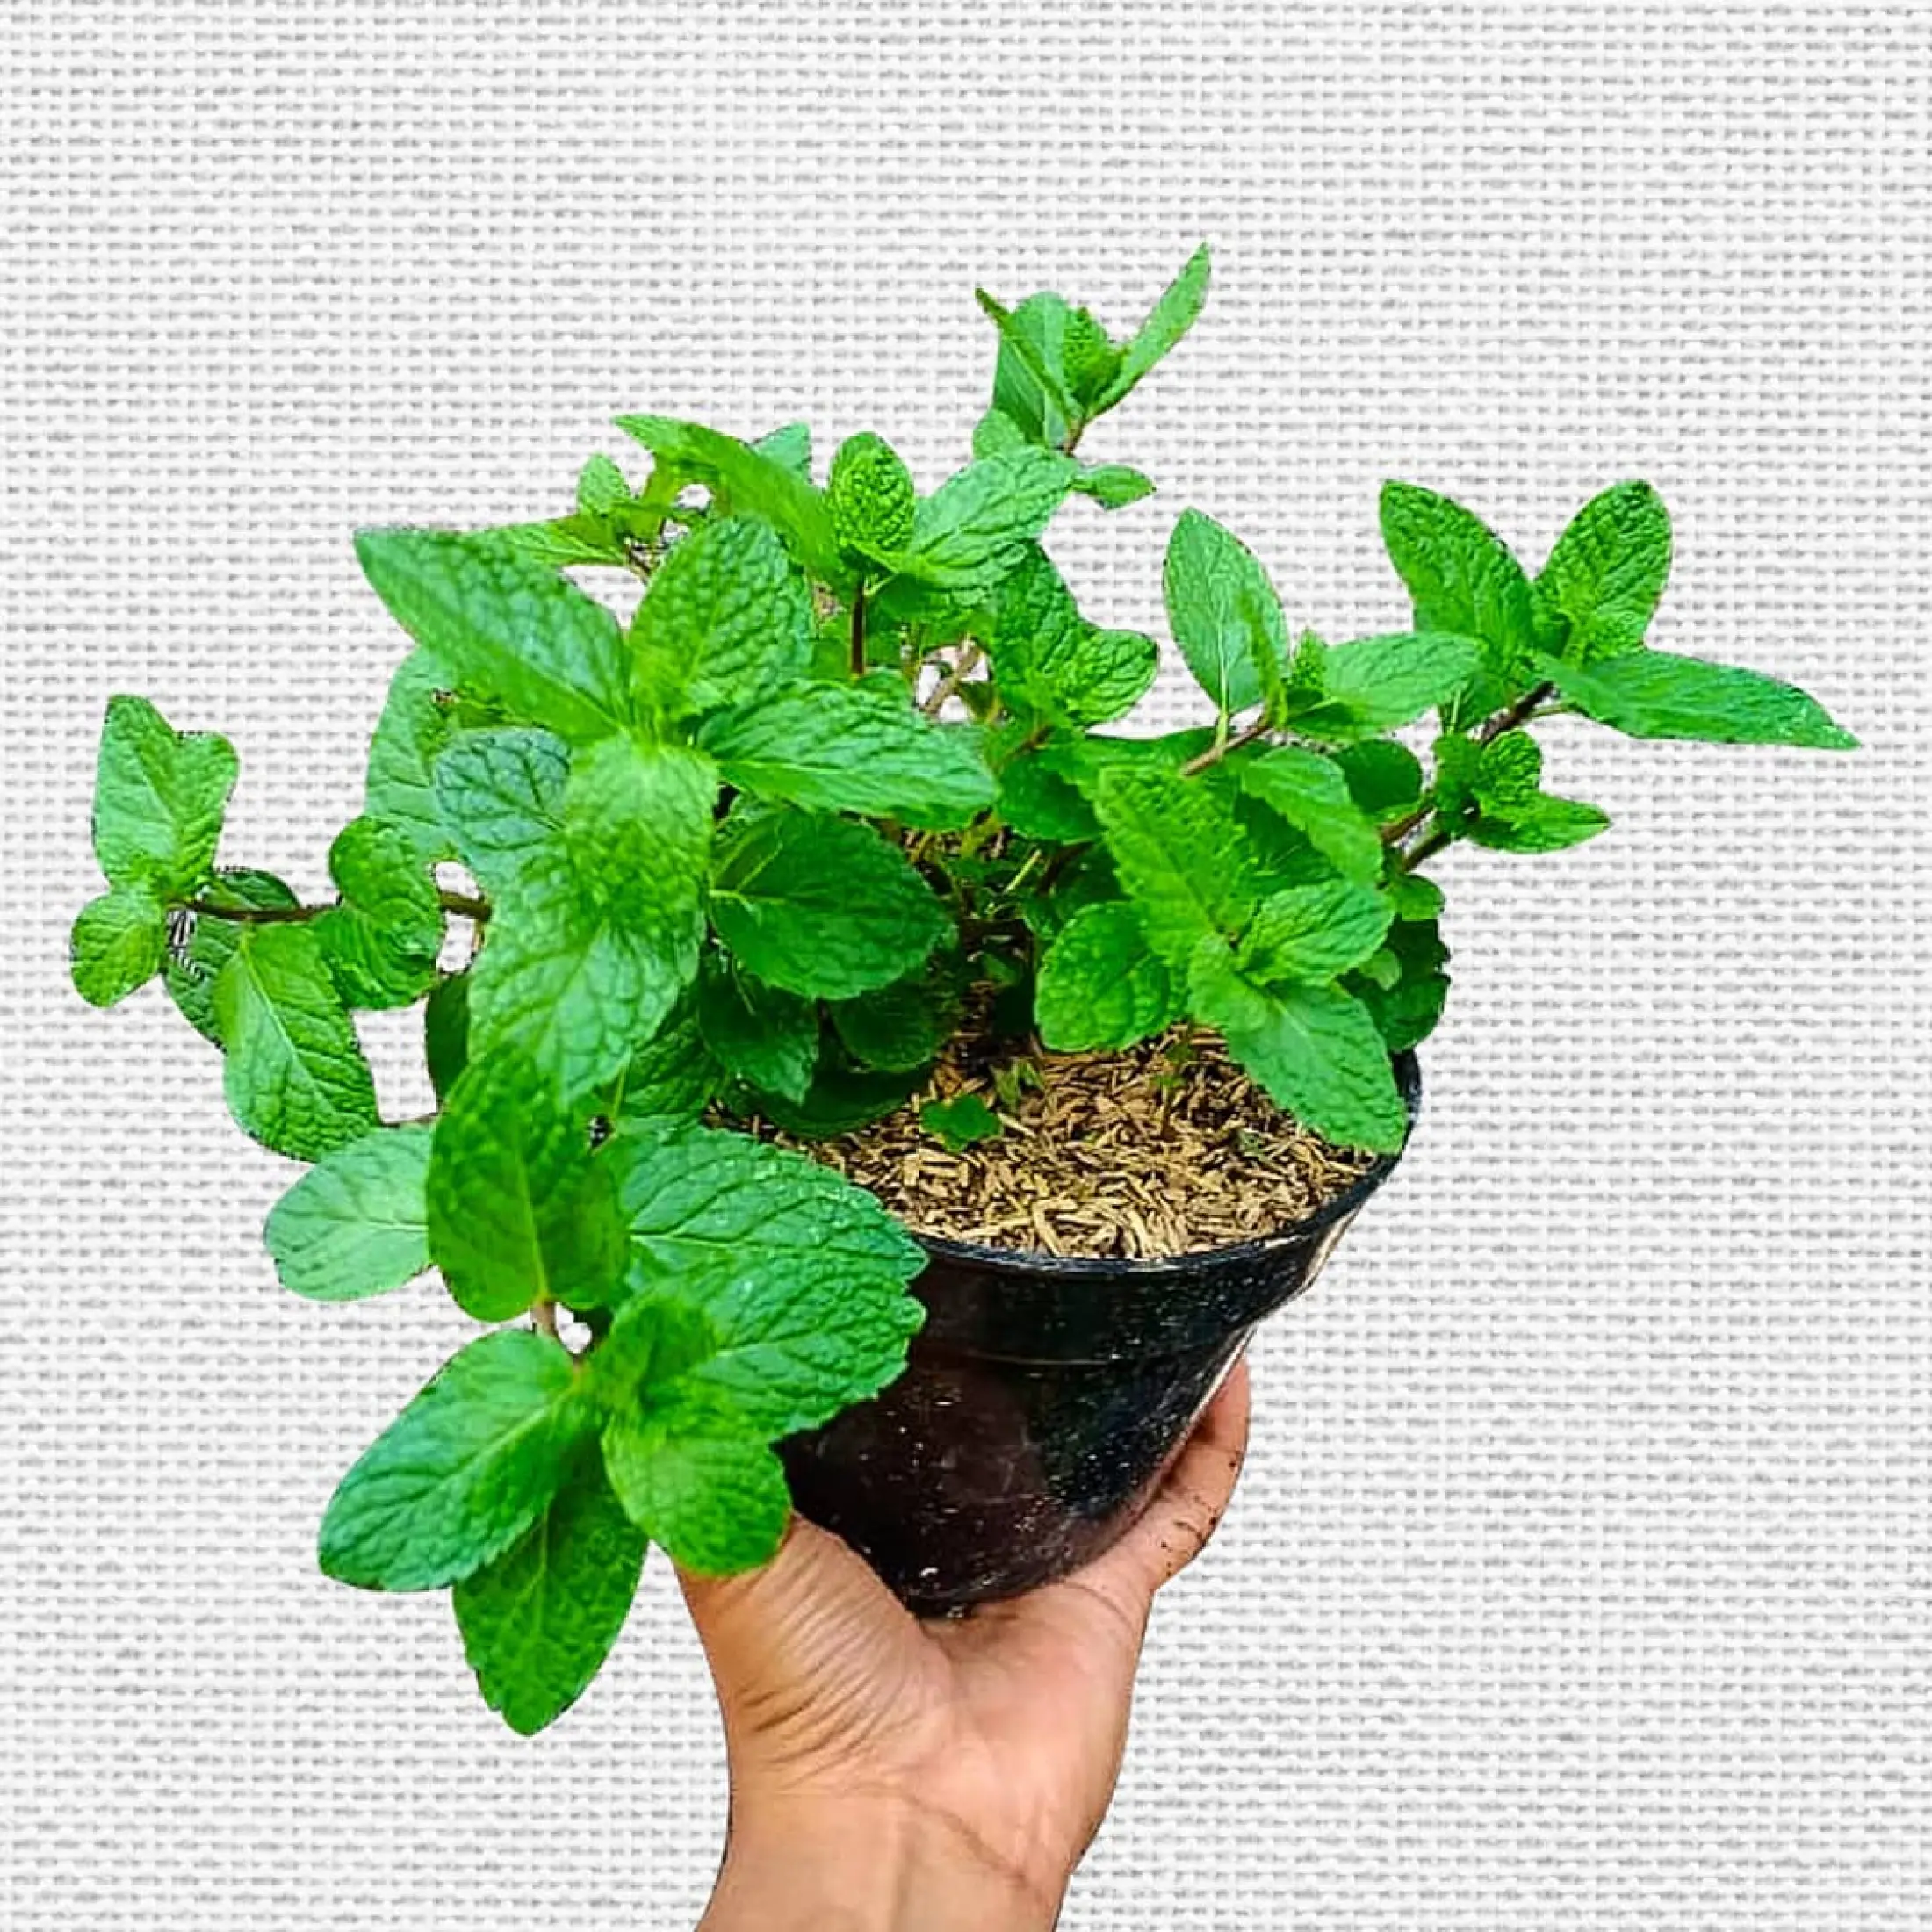 Tanaman Daun Mint Cod Tanaman Herbal Pepper Mint Tanaman Hias Murah Lazada Indonesia